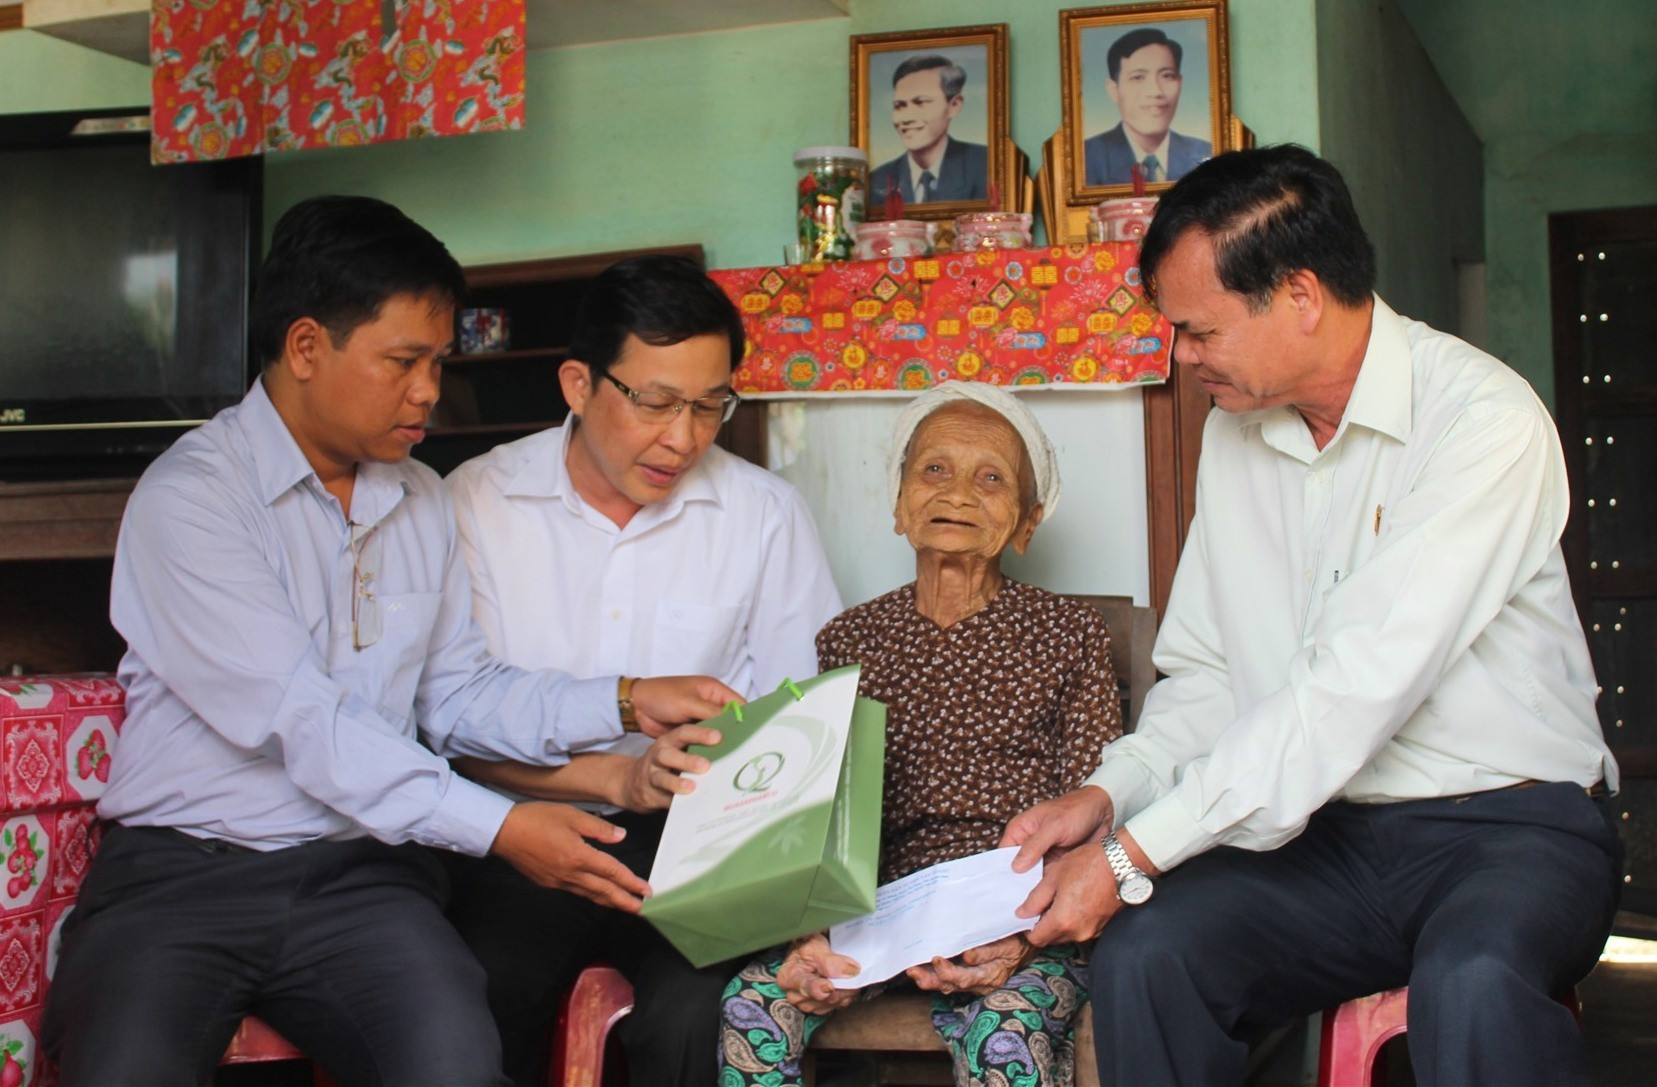 Hằng năm, cứ mỗi dịp lễ, tết, lãnh đạo huyện Tây Giang luôn đến thăm và tặng quà cho các Mẹ